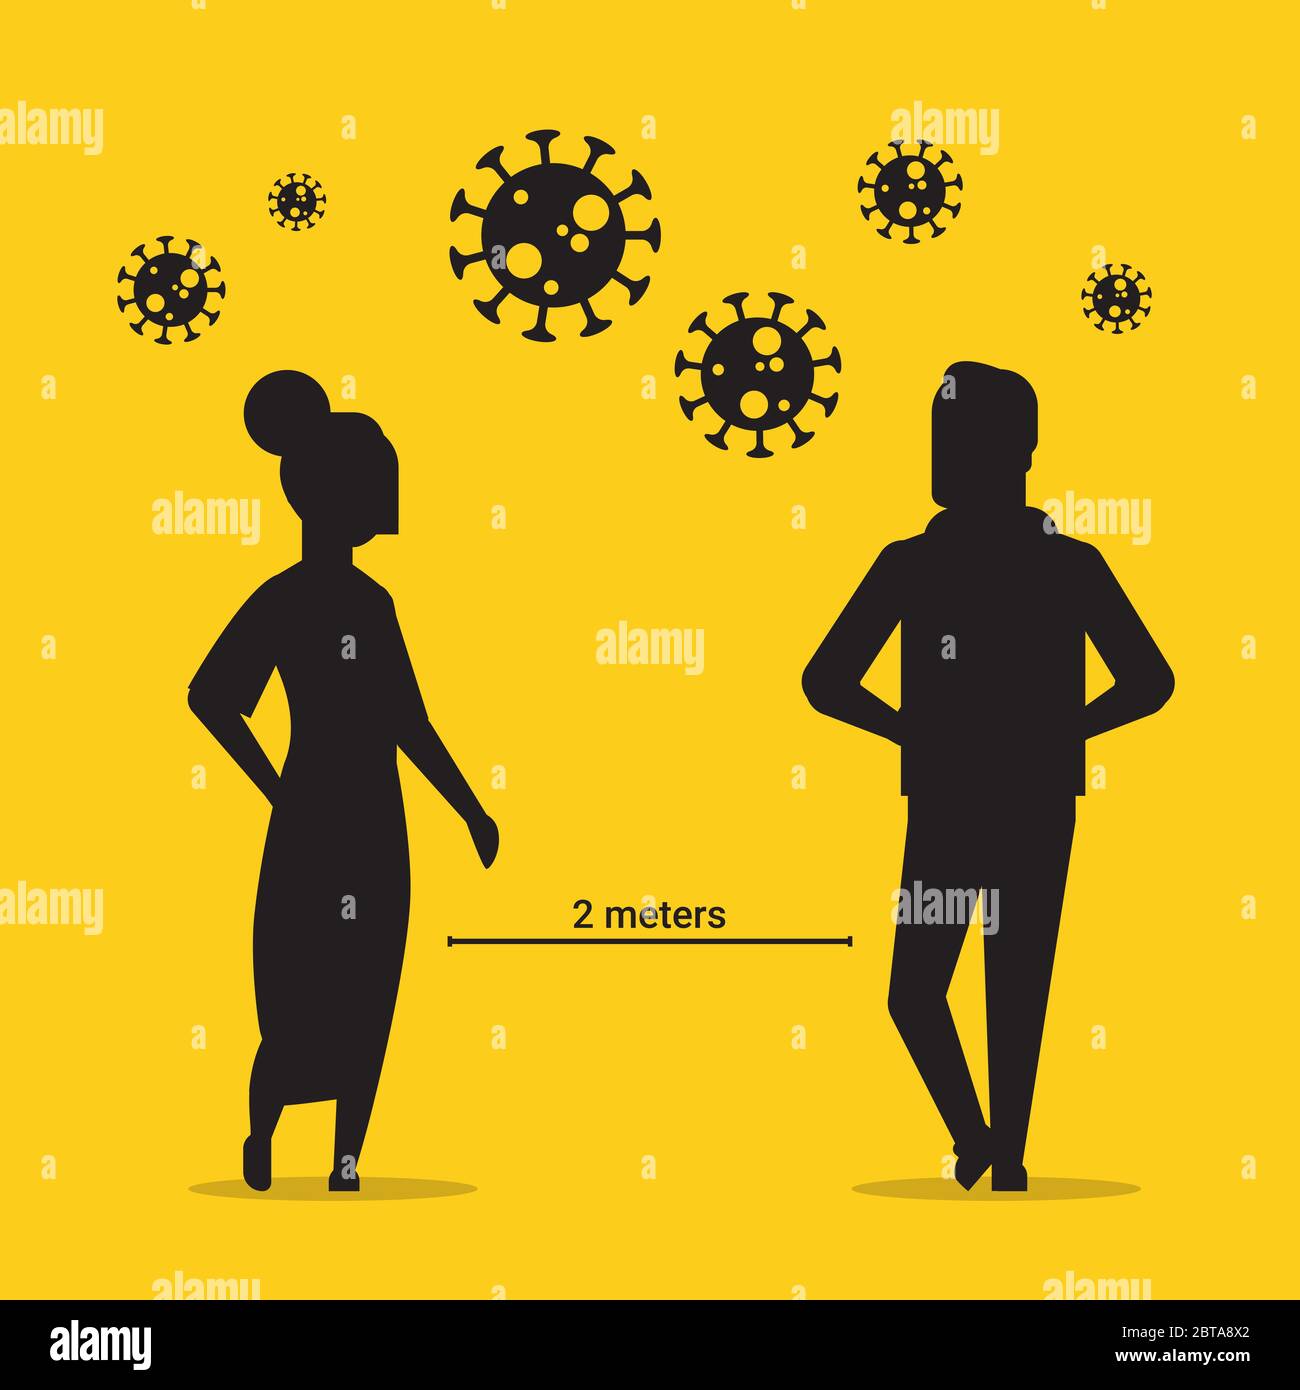 homme femme silhouette garder 2 mètres de distance pour prévenir la covid-19 social distanciation coronavirus pandémie concept de soins de santé illustration pleine longueur vecteur Illustration de Vecteur